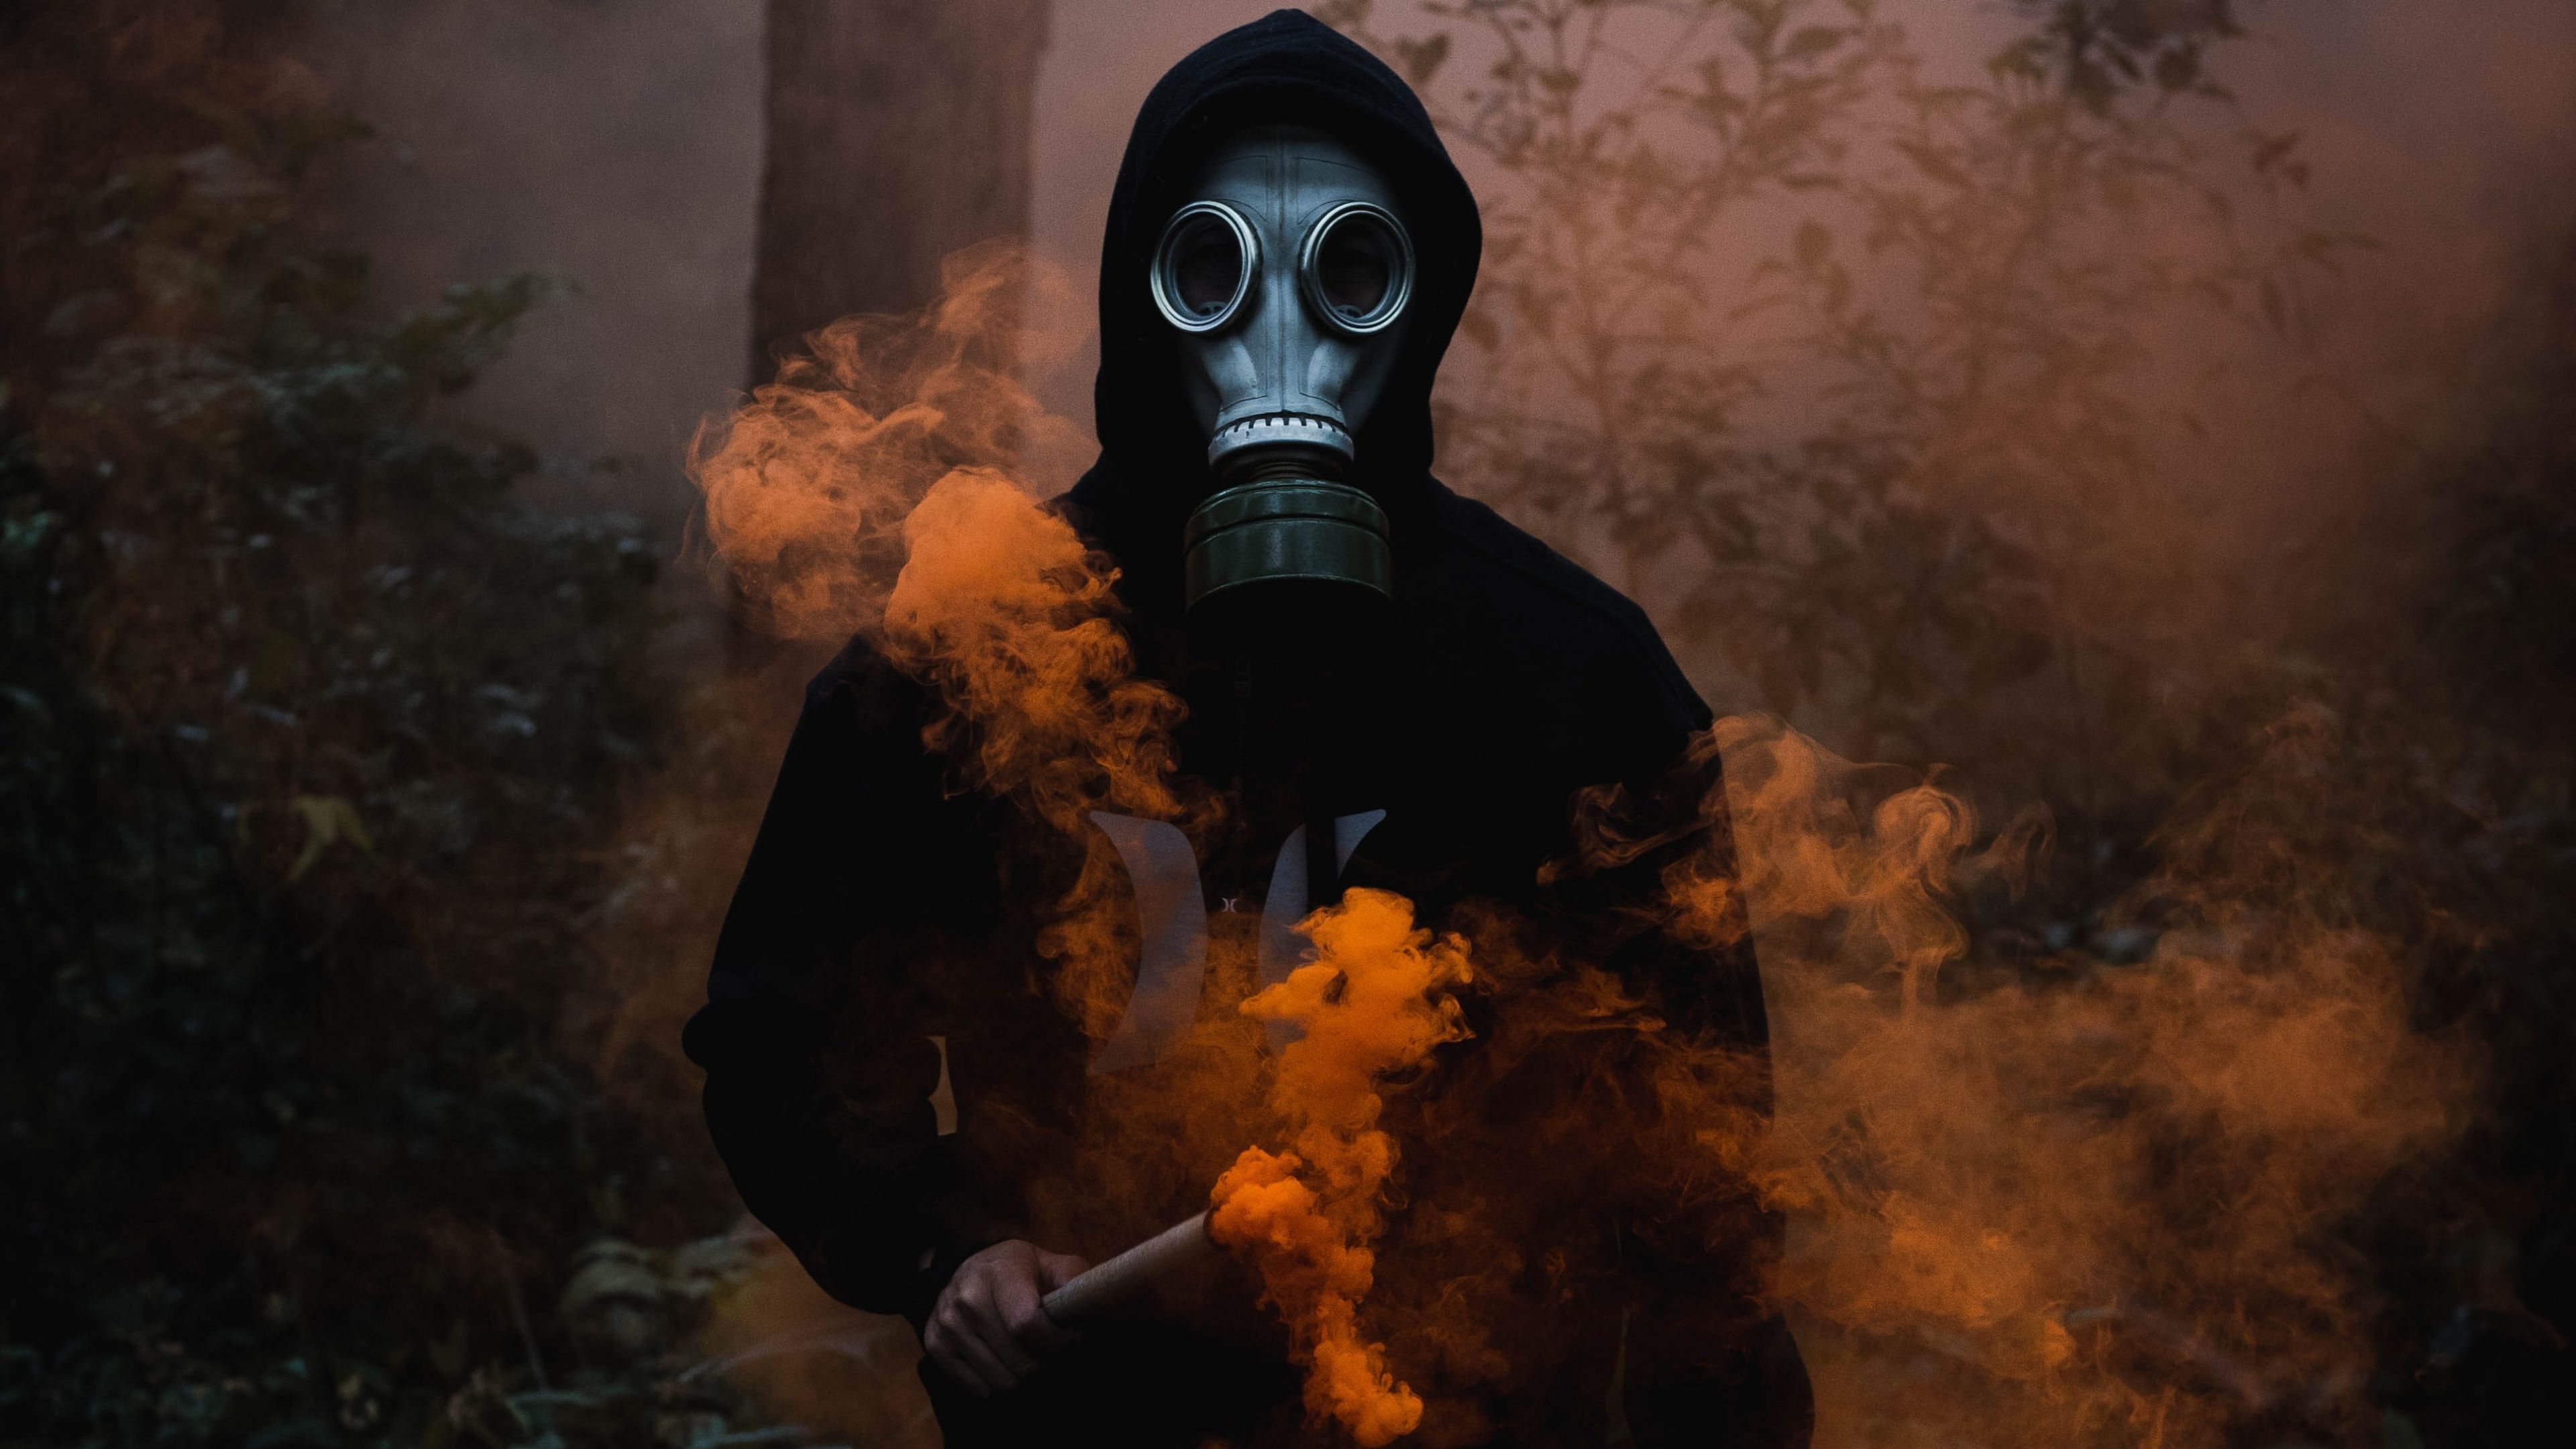 Man in Mask 4K Wallpaper, Black Jacket, Smoke can, Dark Background, Orange Smoke, 5K, Photography